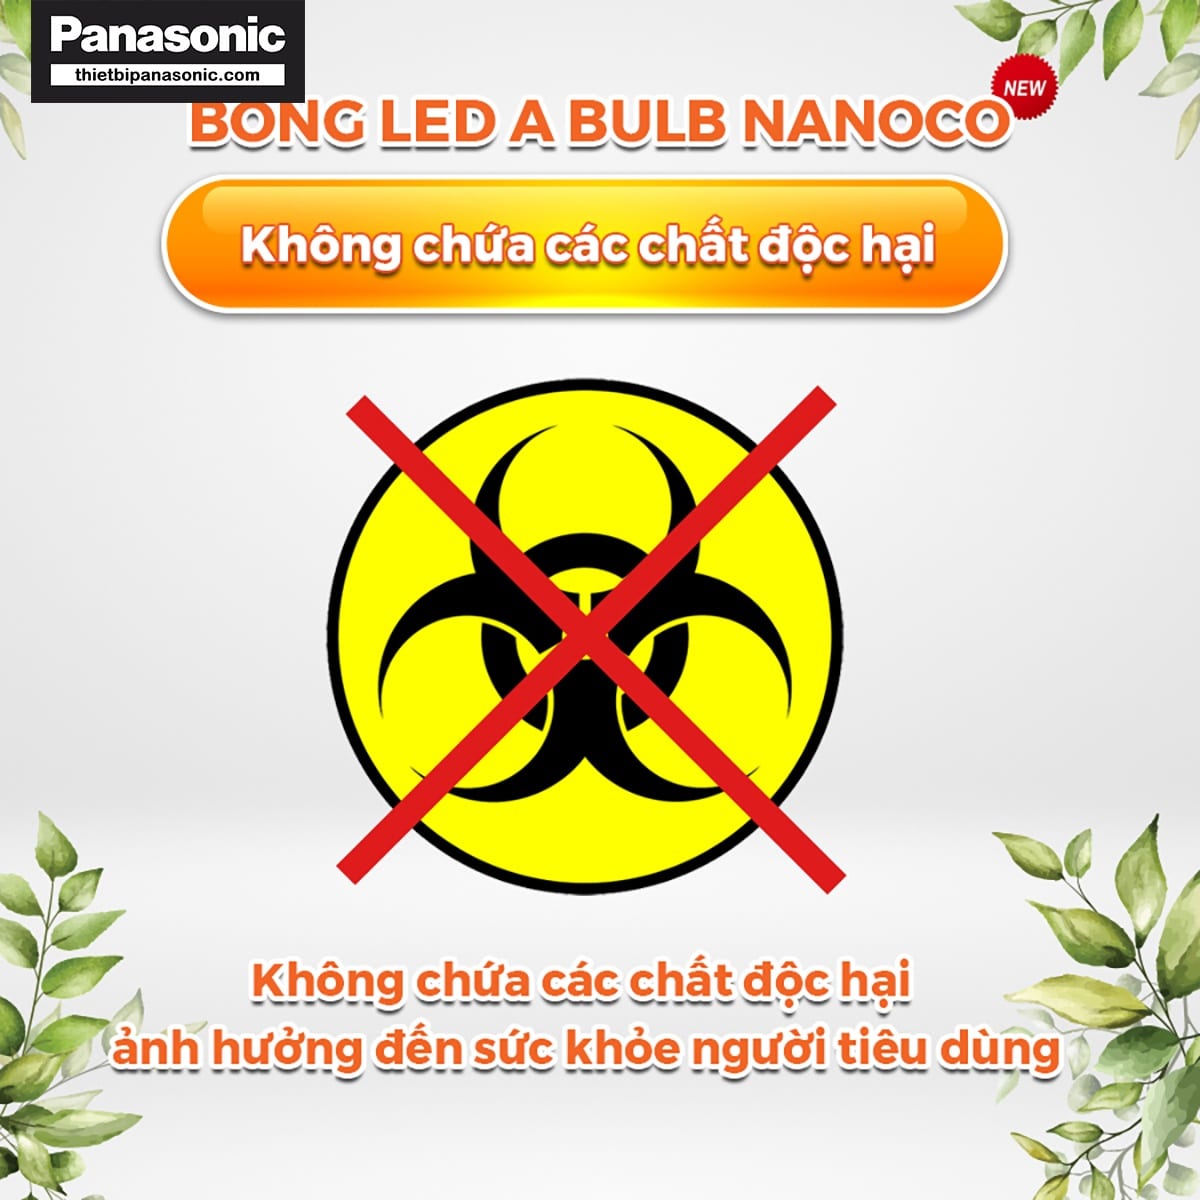 Bóng đèn bulb 20W Nanoco NLB206, NLB204, NLB203 không chứa các chất độc hại ảnh hưởng xấu tới sức khỏe